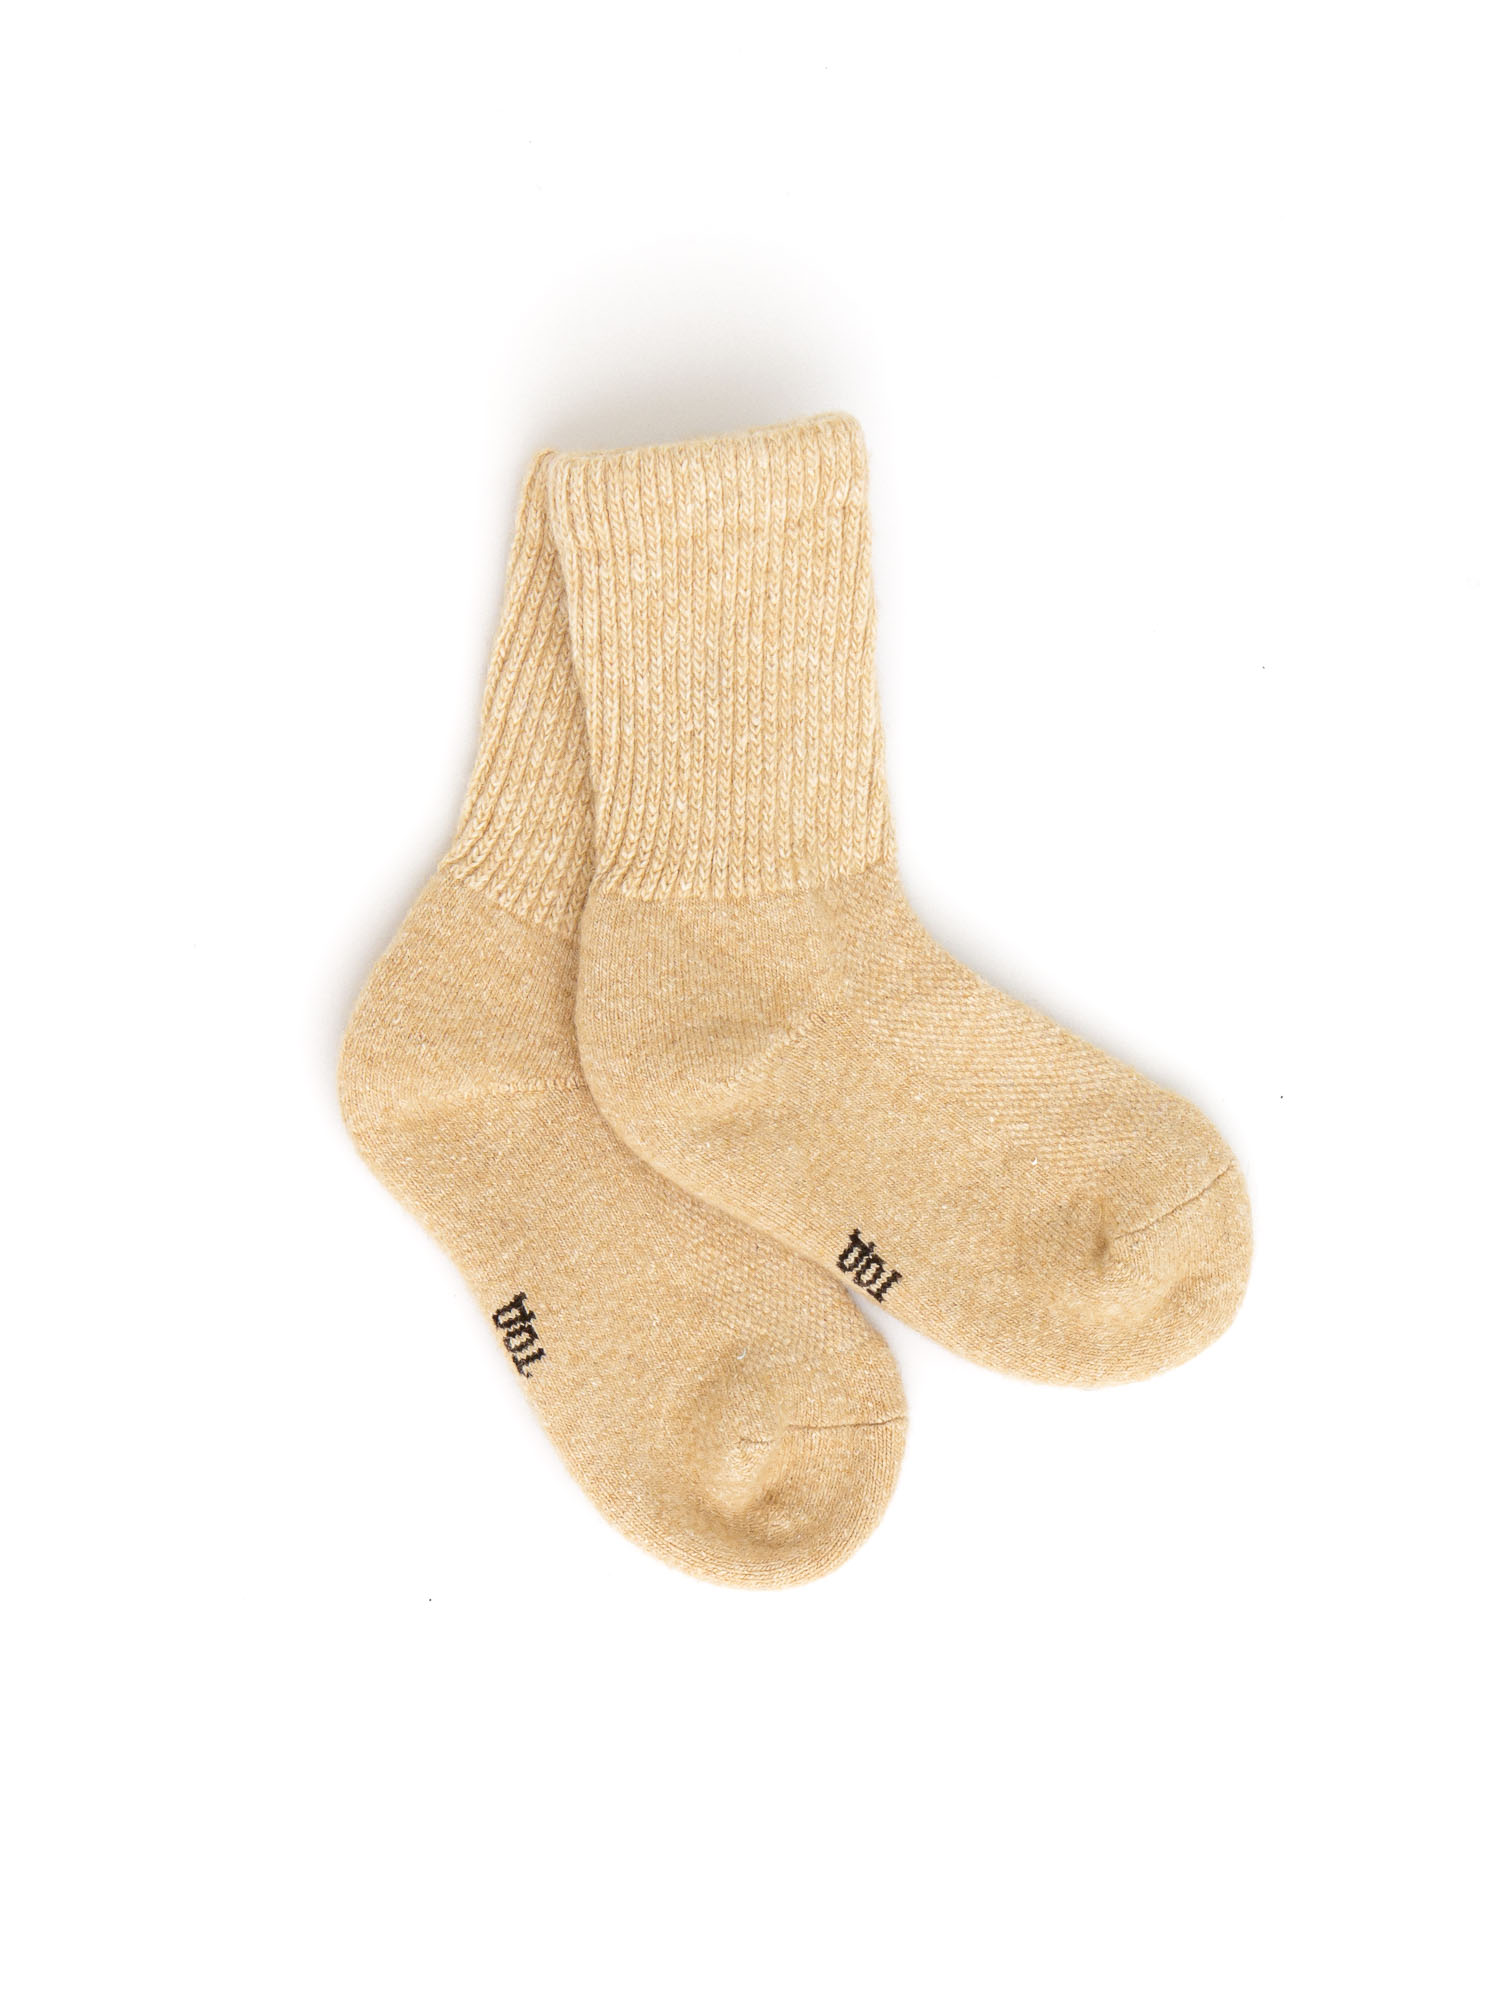 Детские носки из монгольской шерсти бежевые 2 (12-14 см) ТОД ОЙМС ХХК, цвет бежевый, размер 2 (12-14 см)